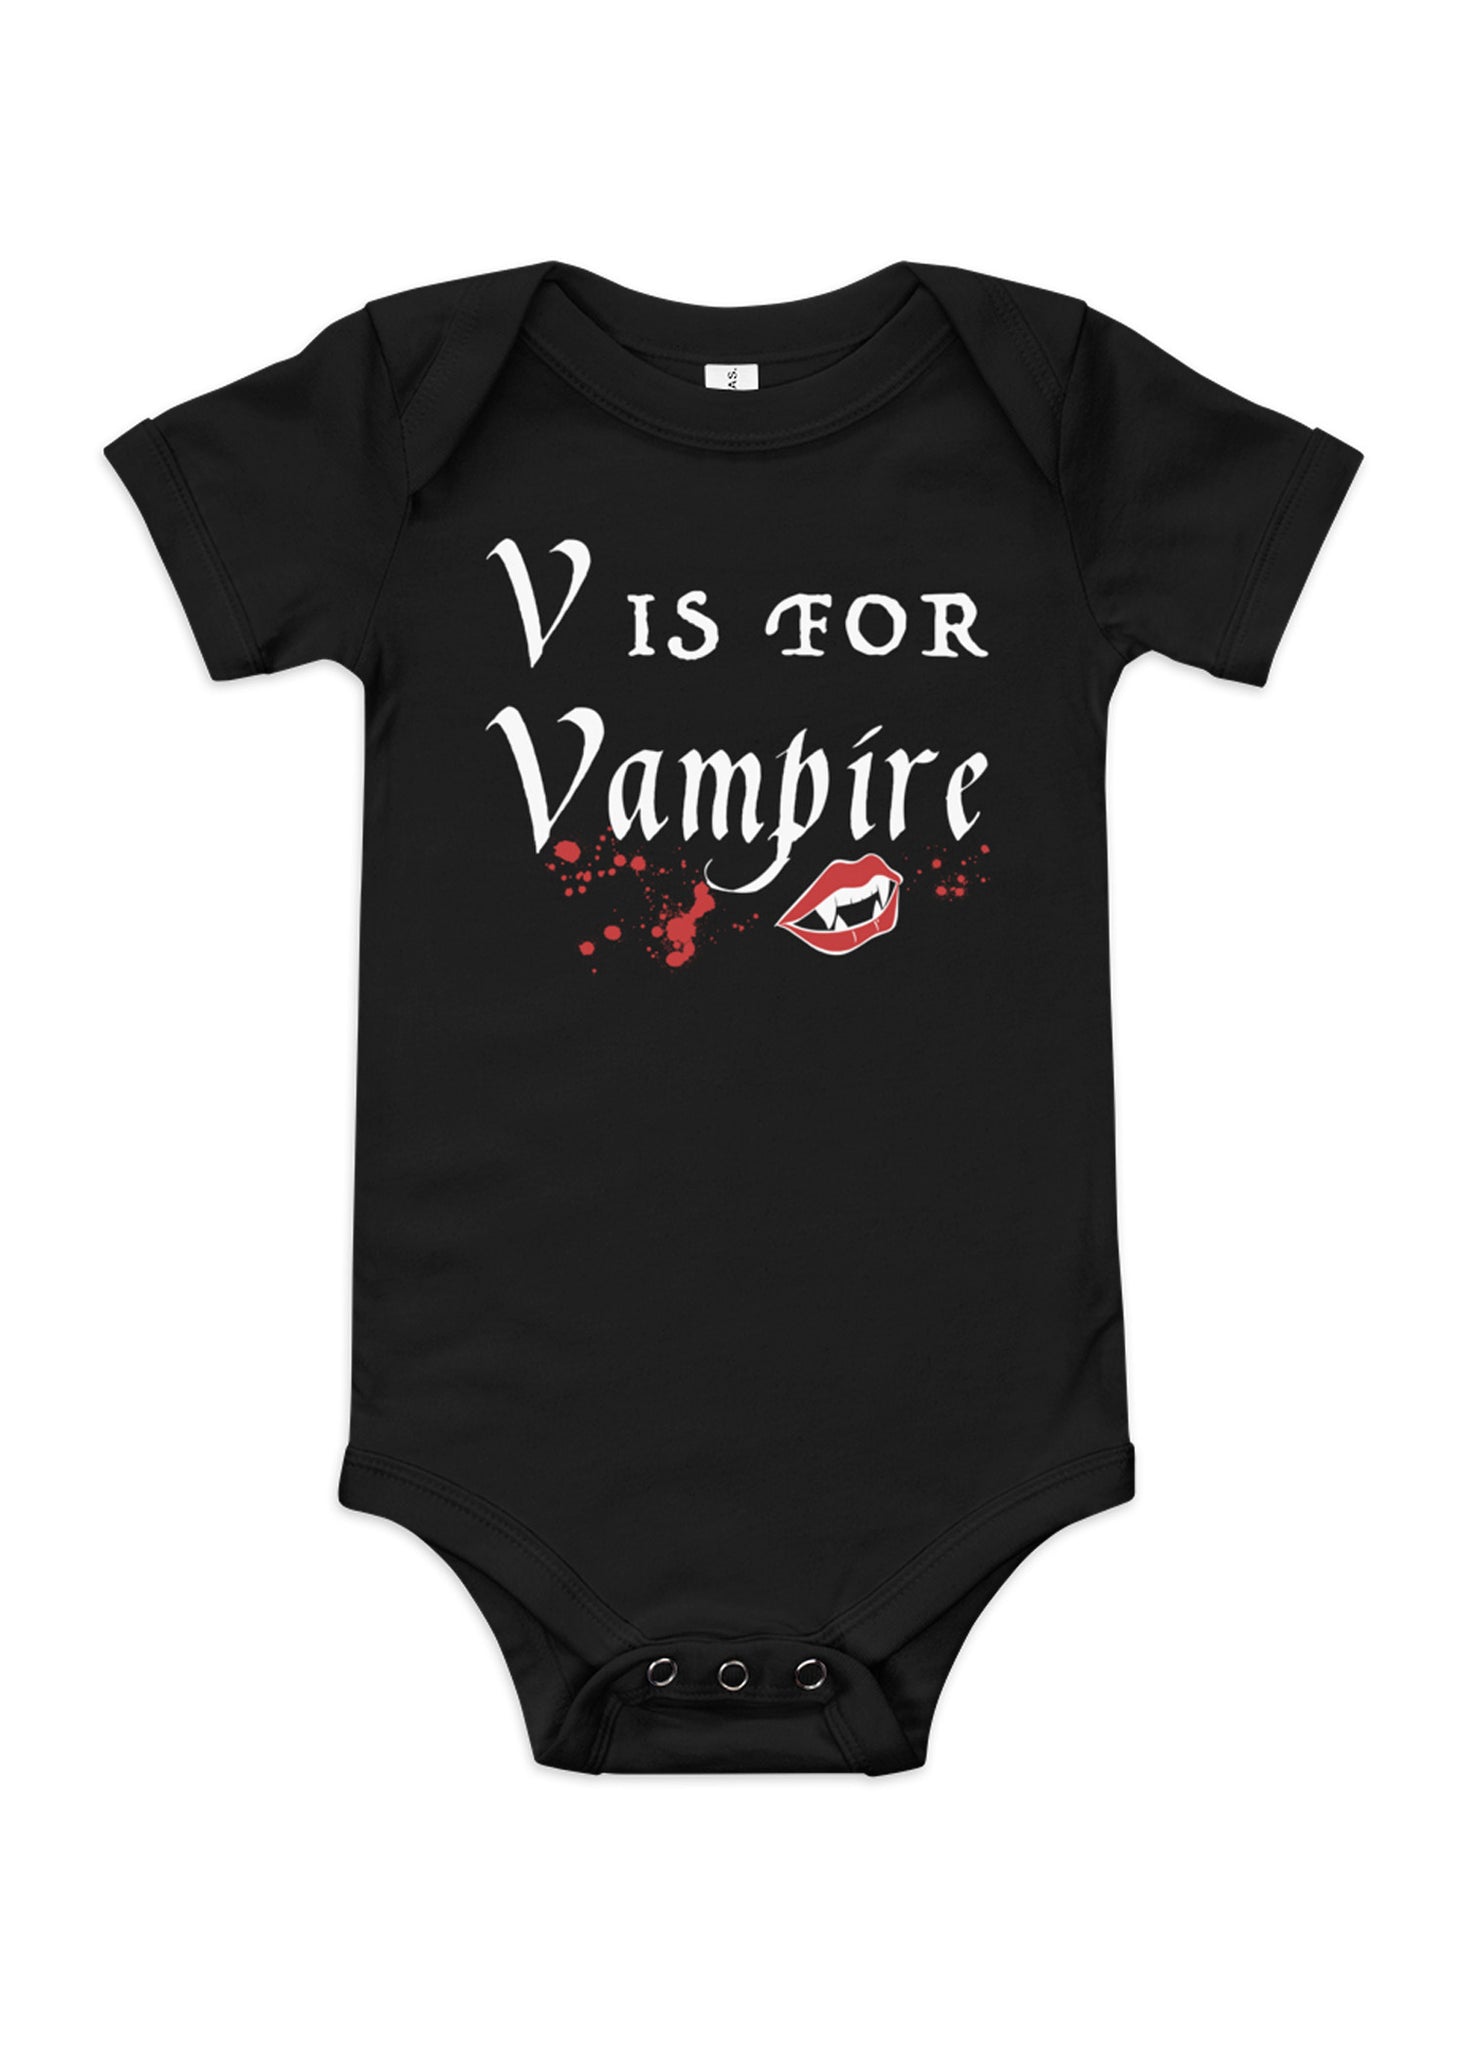 Baby "V is for Vampire" ABCs Bodysuit in Black